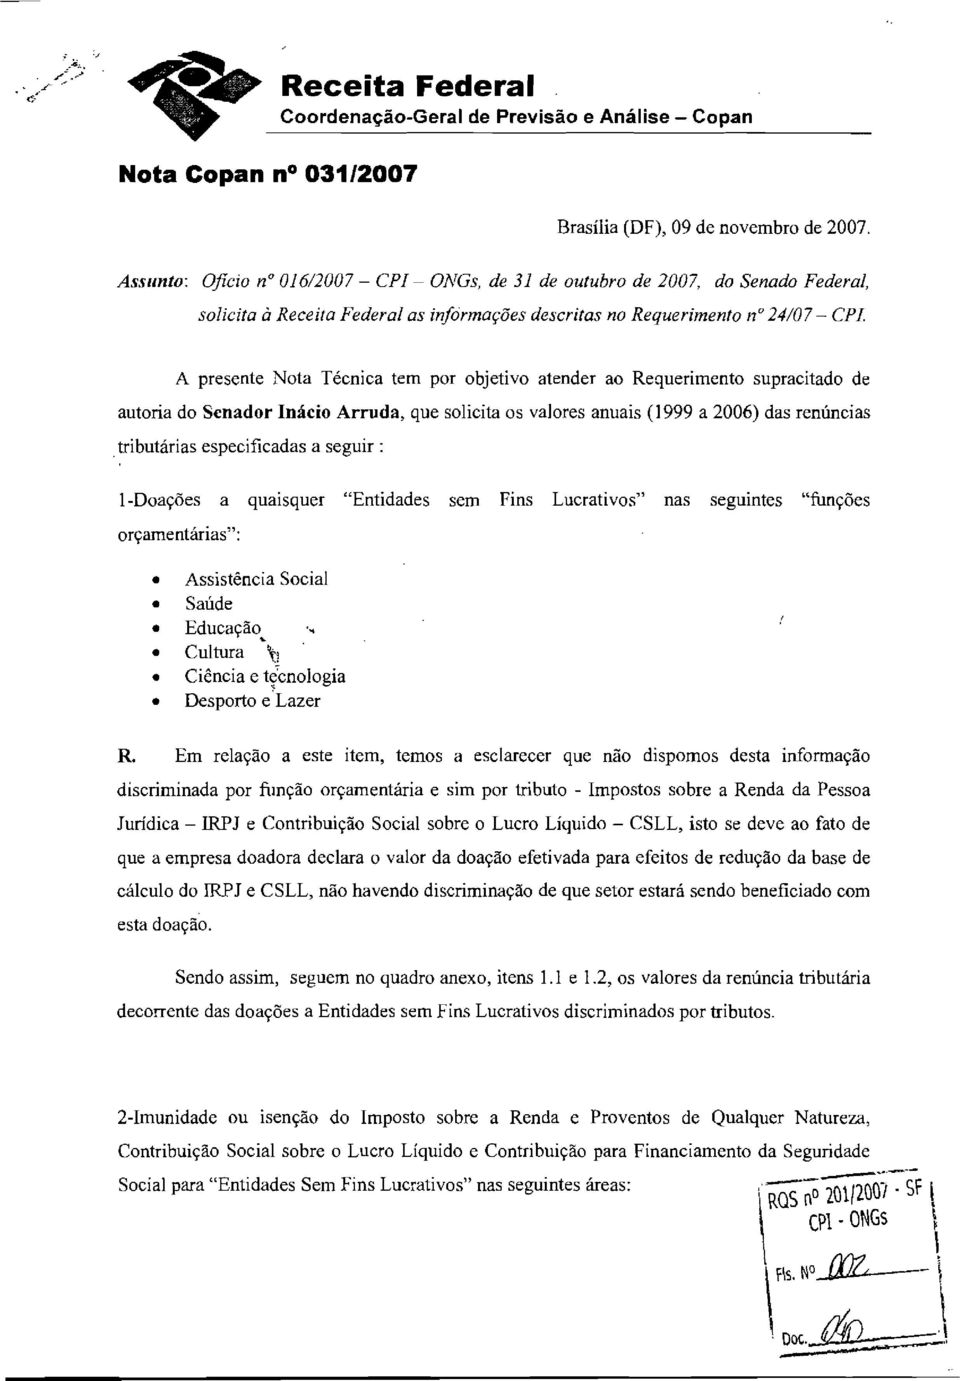 por objetivo atender ao Requerimento supracitado de autoria do Senador Inácio Arruda, que solicita os valores anuais (1999 a 2006) das renúncias tributárias especificadas a seguir: l-doações a